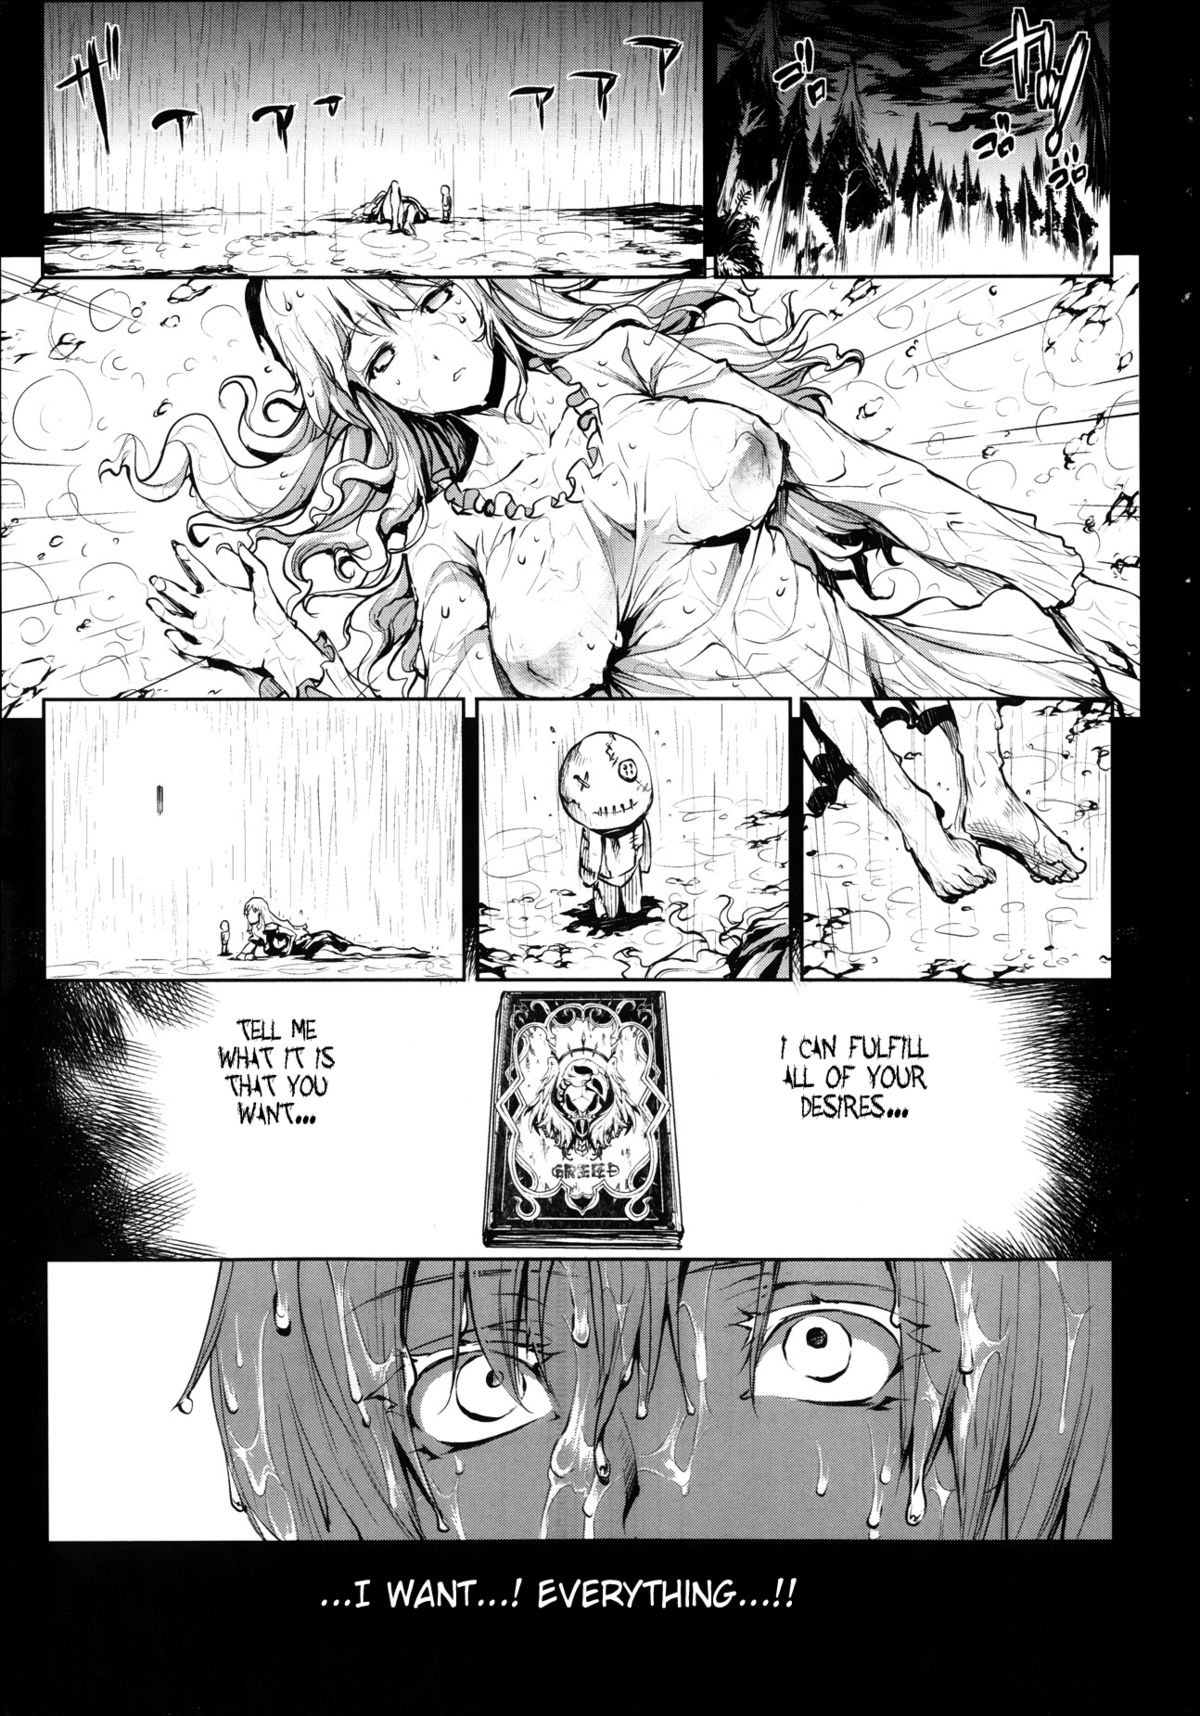 [エレクトさわる] 神曲のグリモワール―PANDRA saga 2nd story― 第1-17話 + 番外編 x 3 [英訳]